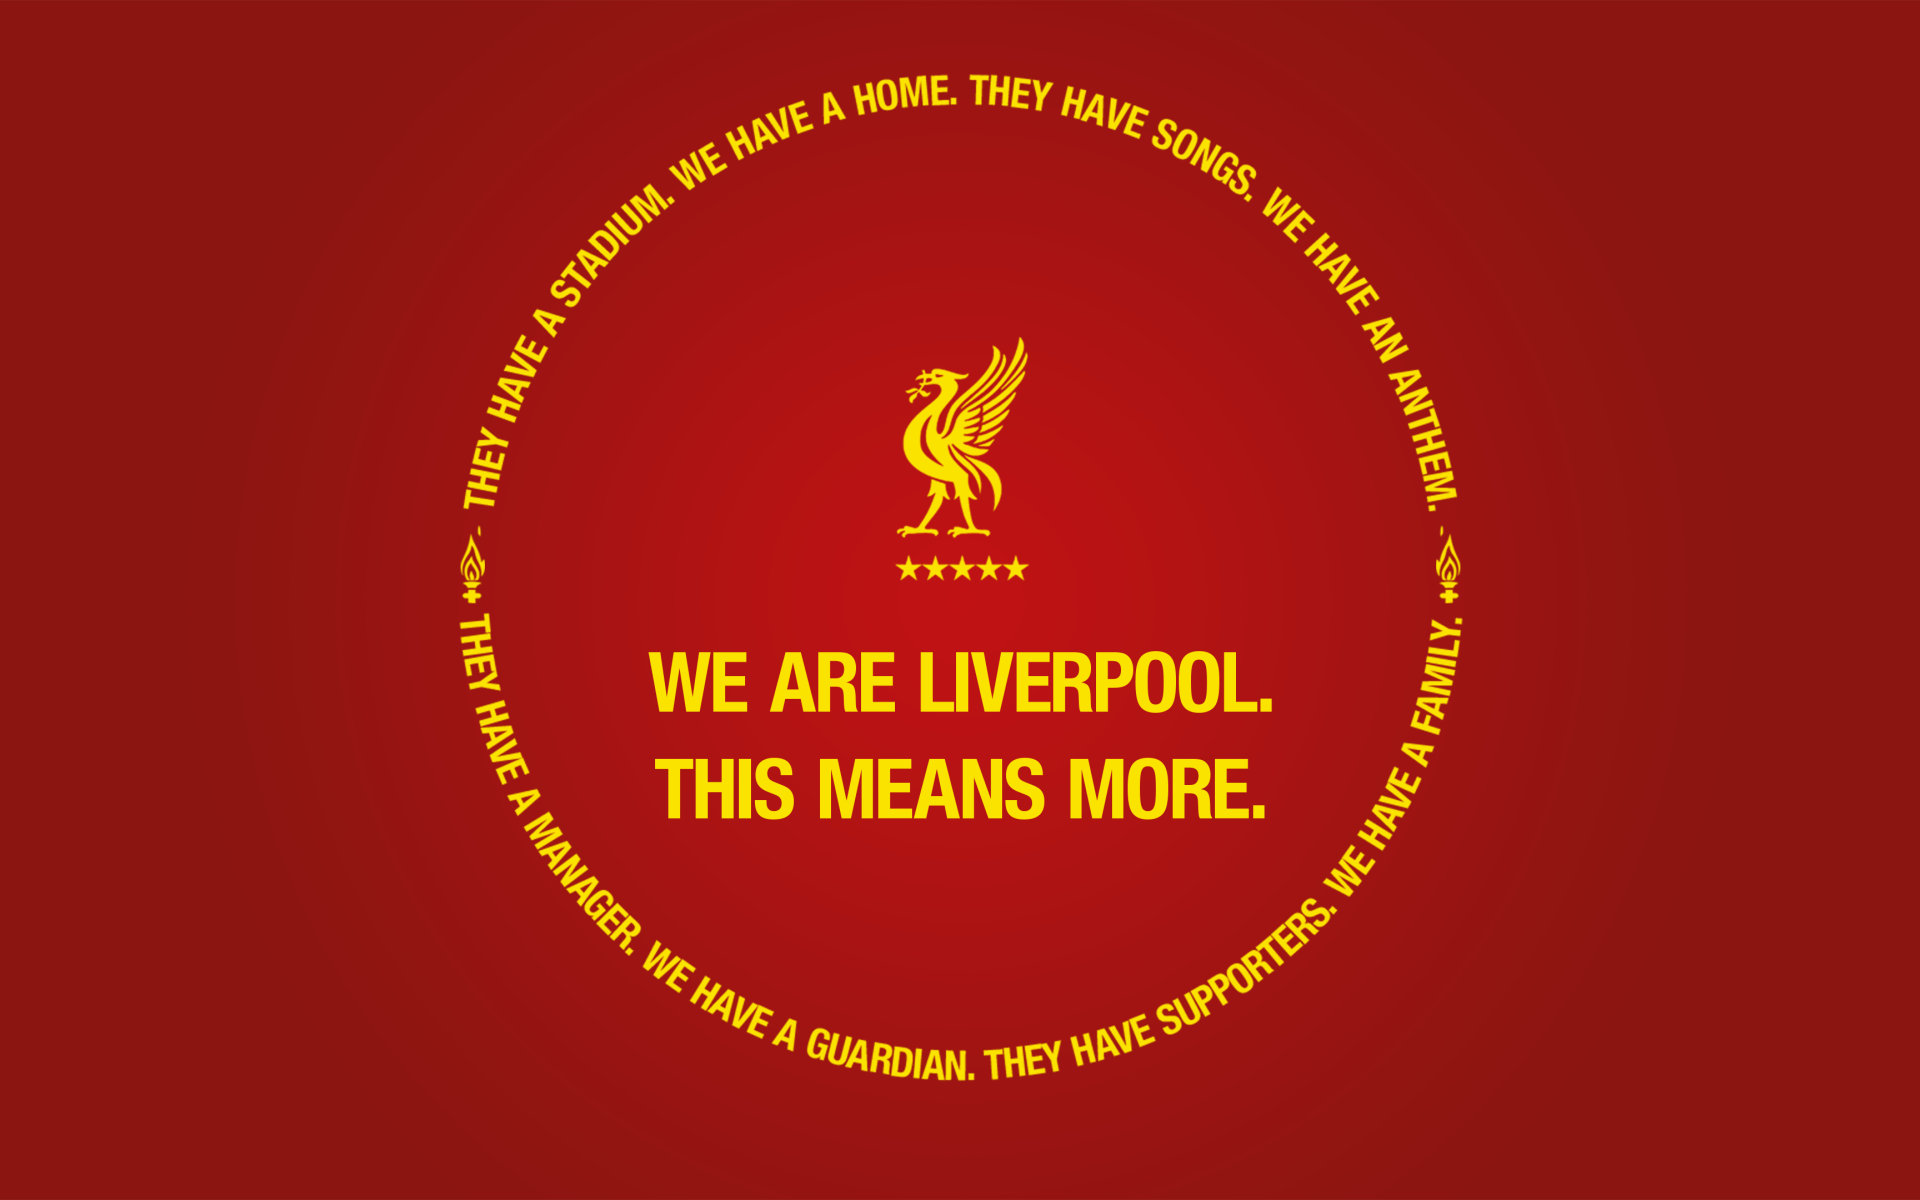 Логотип футбольного клуба Ливерпуль на красном фоне